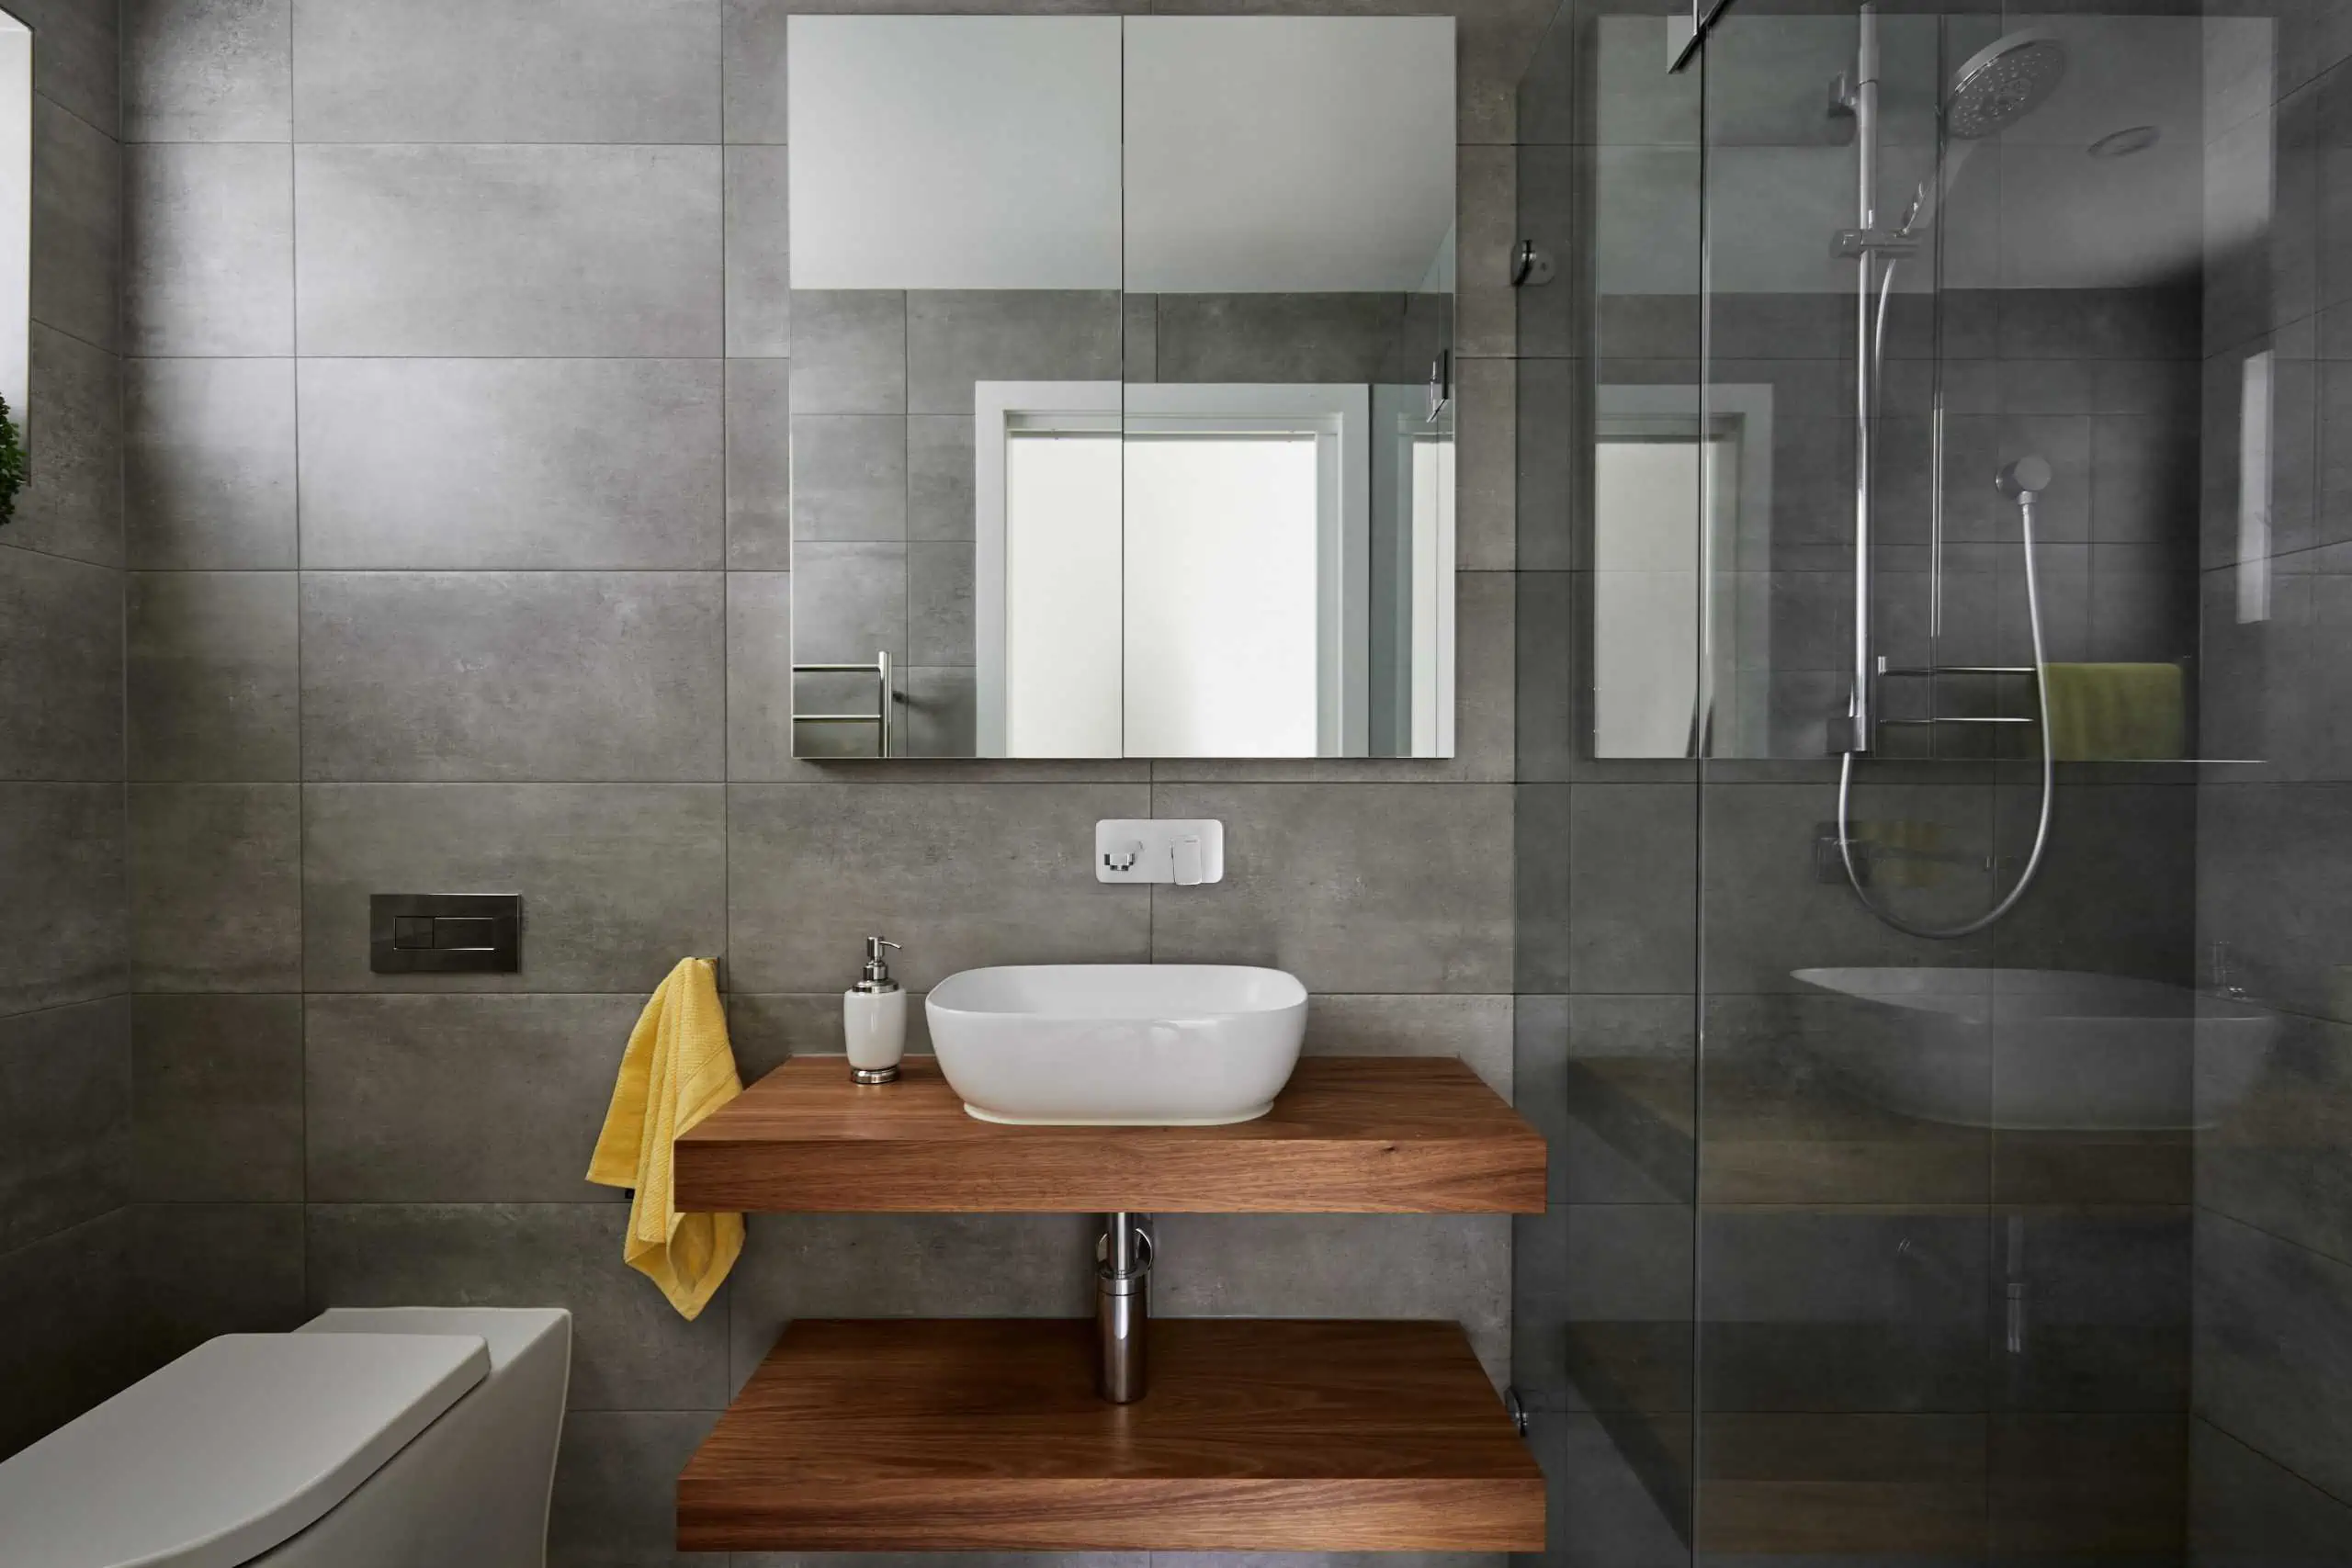 Mirrored wall unit in a modern bathroom